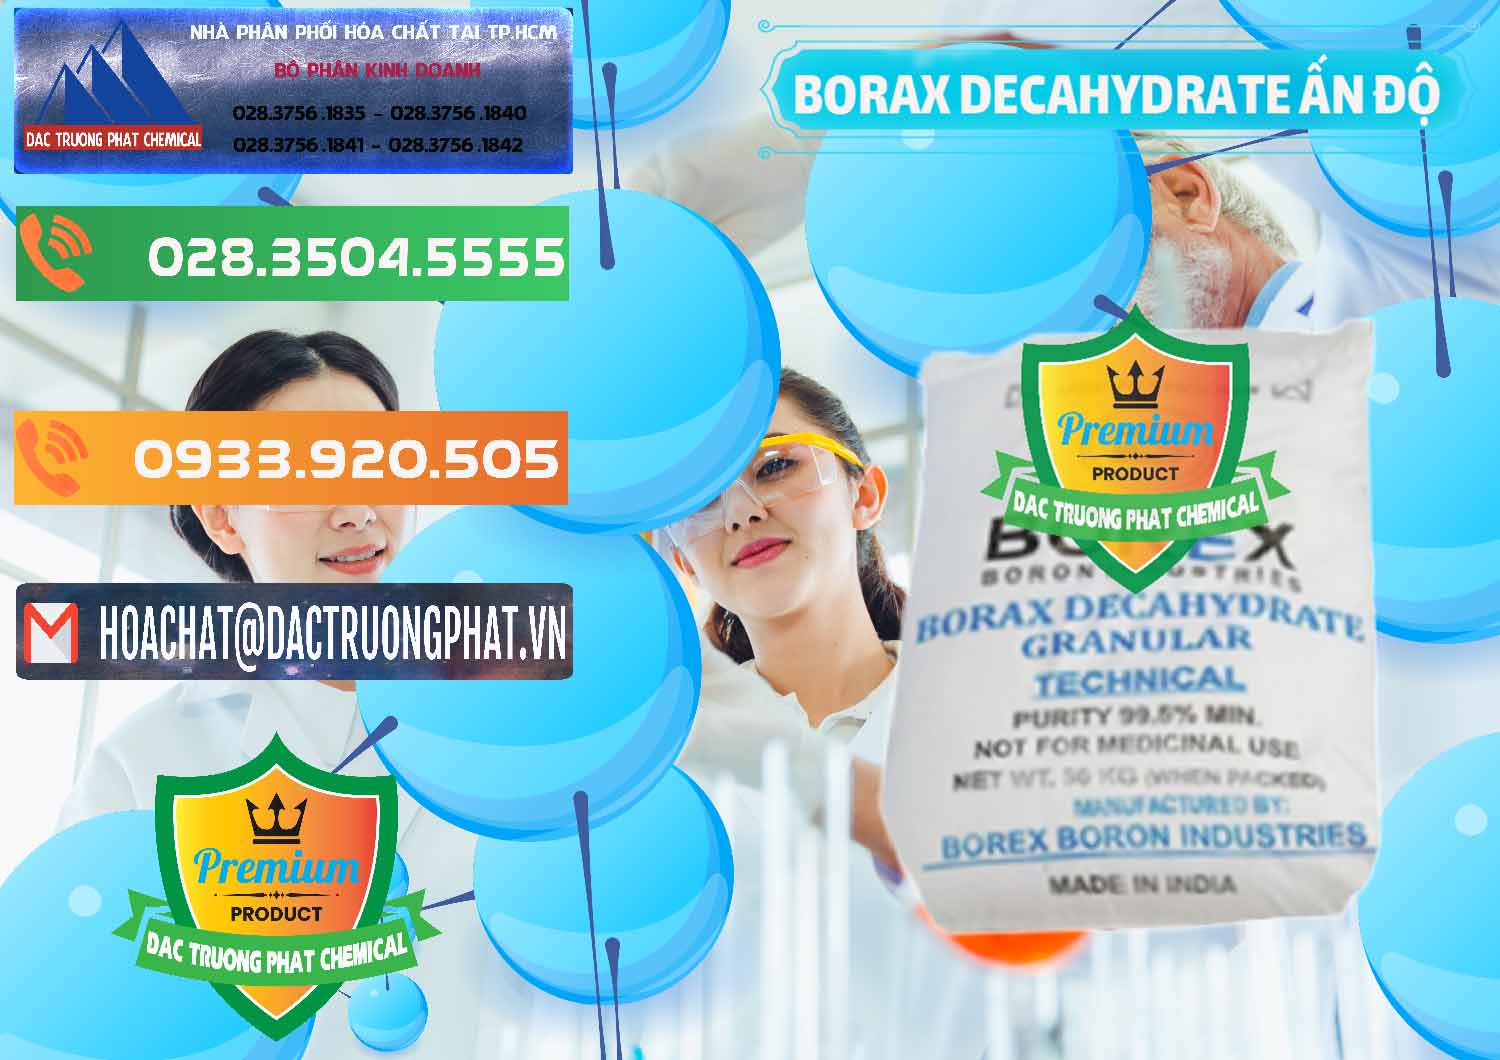 Cty bán - cung cấp Borax Decahydrate Ấn Độ India - 0449 - Đơn vị nhập khẩu - cung cấp hóa chất tại TP.HCM - hoachatxulynuoc.com.vn